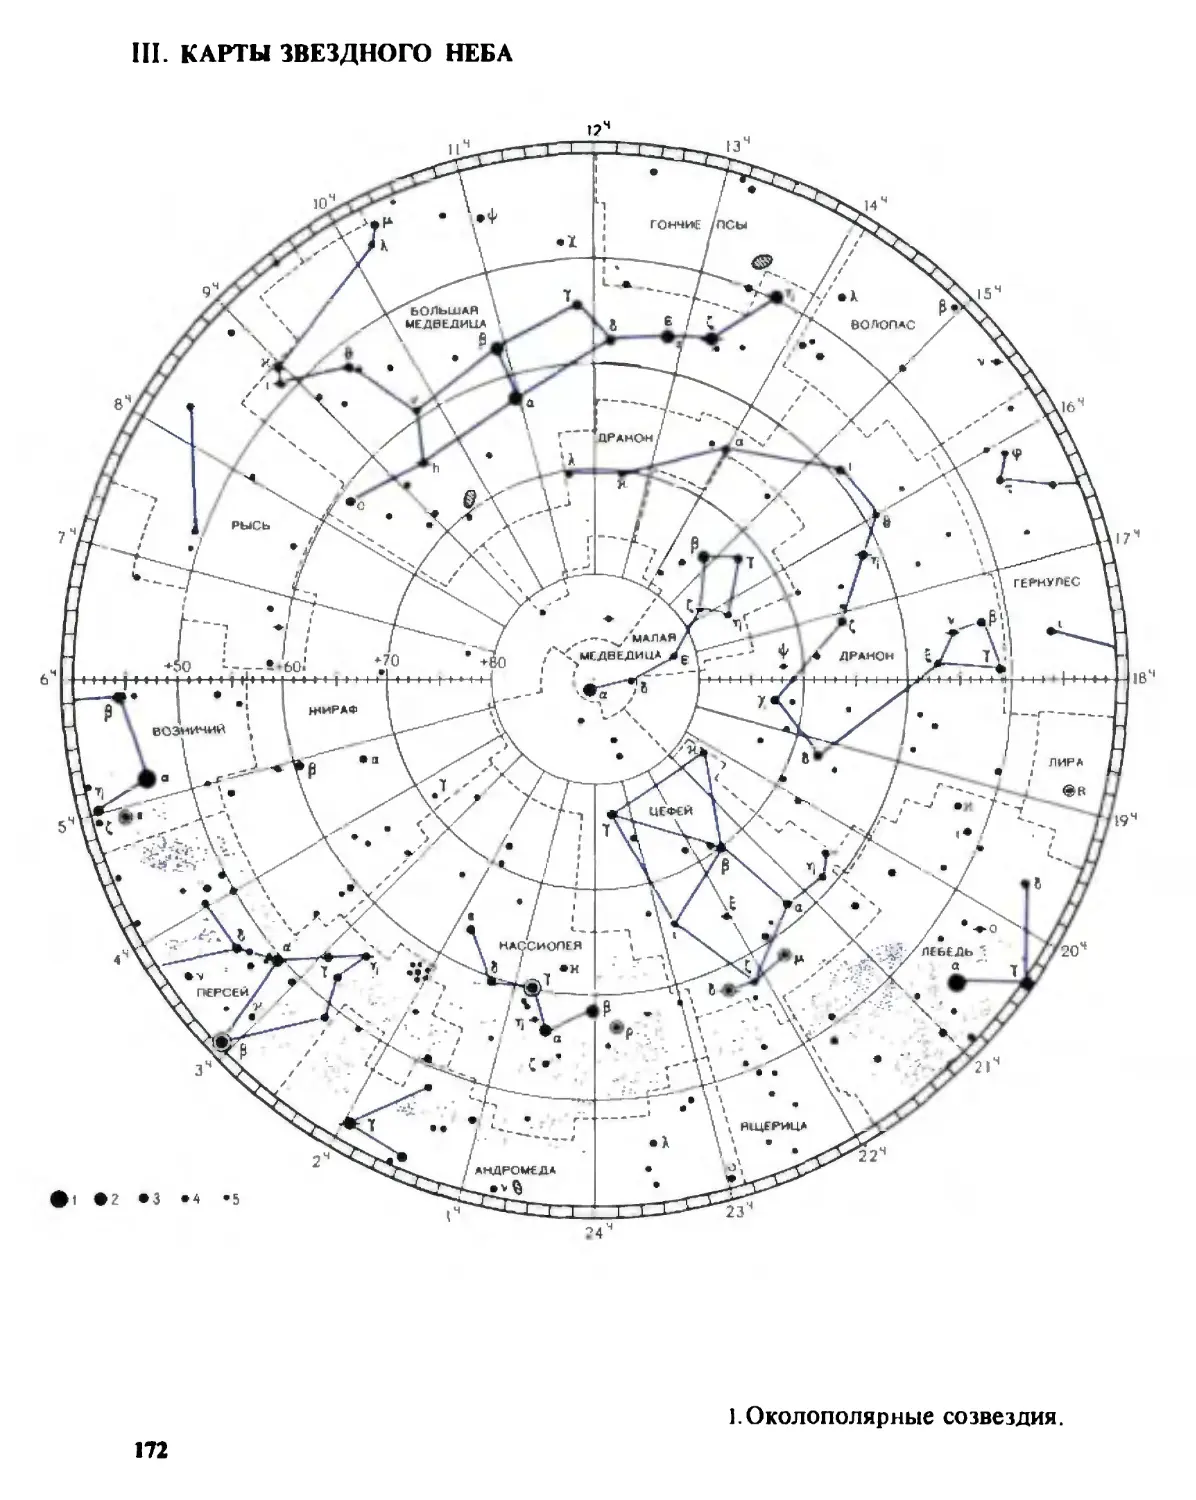 III. Карты звездного неба